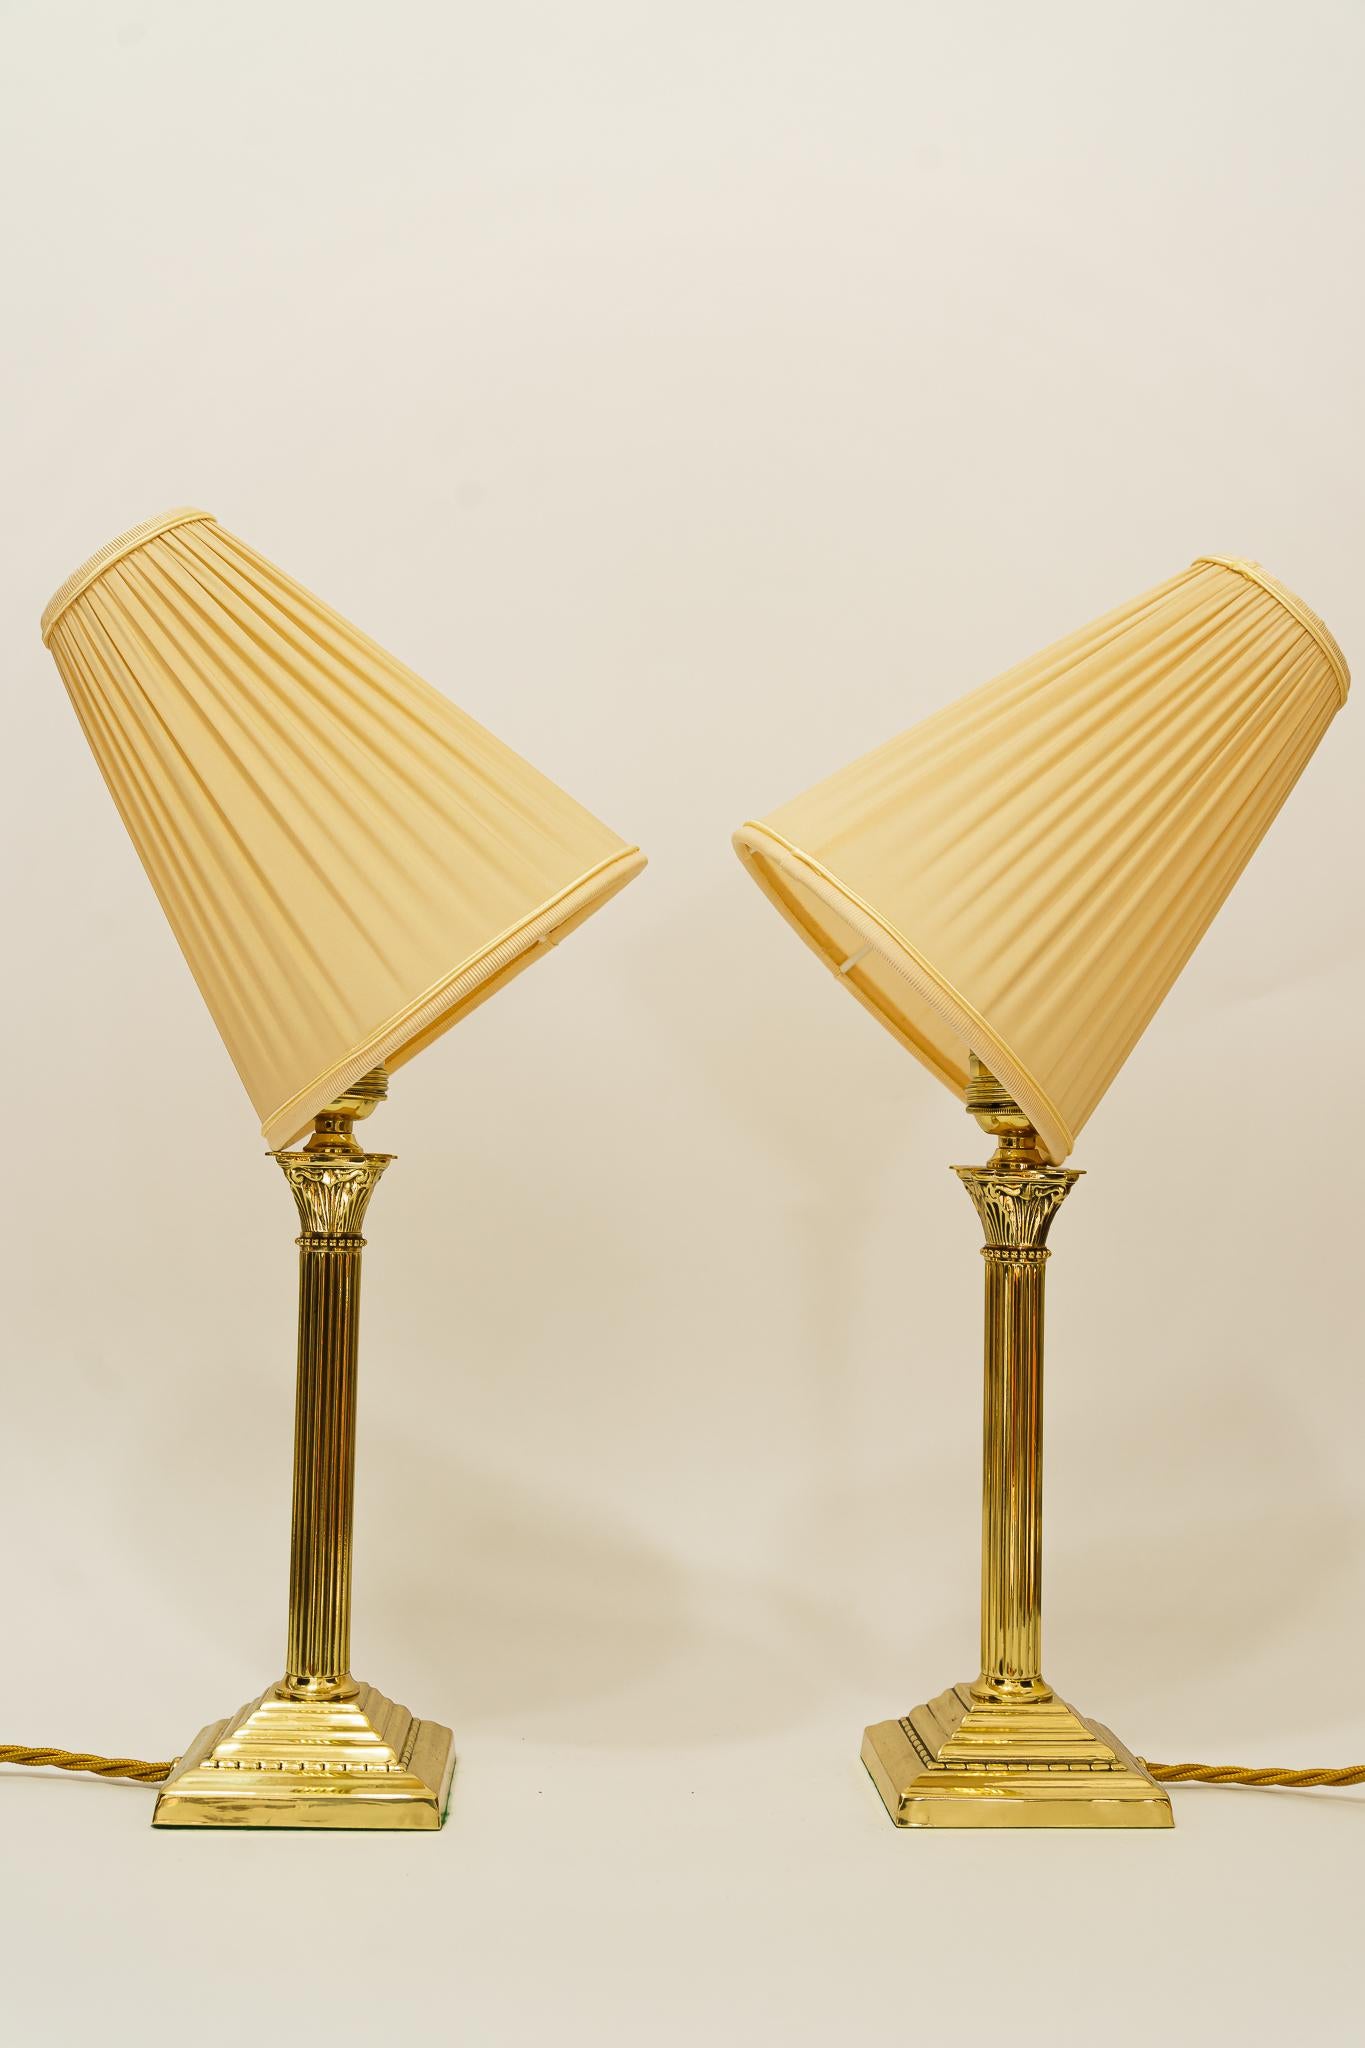 2 lampes de table Art Déco vienne autour des années 1920
Laiton poli et émaillé au four
L'abat-jour en tissu est remplacé (neuf).